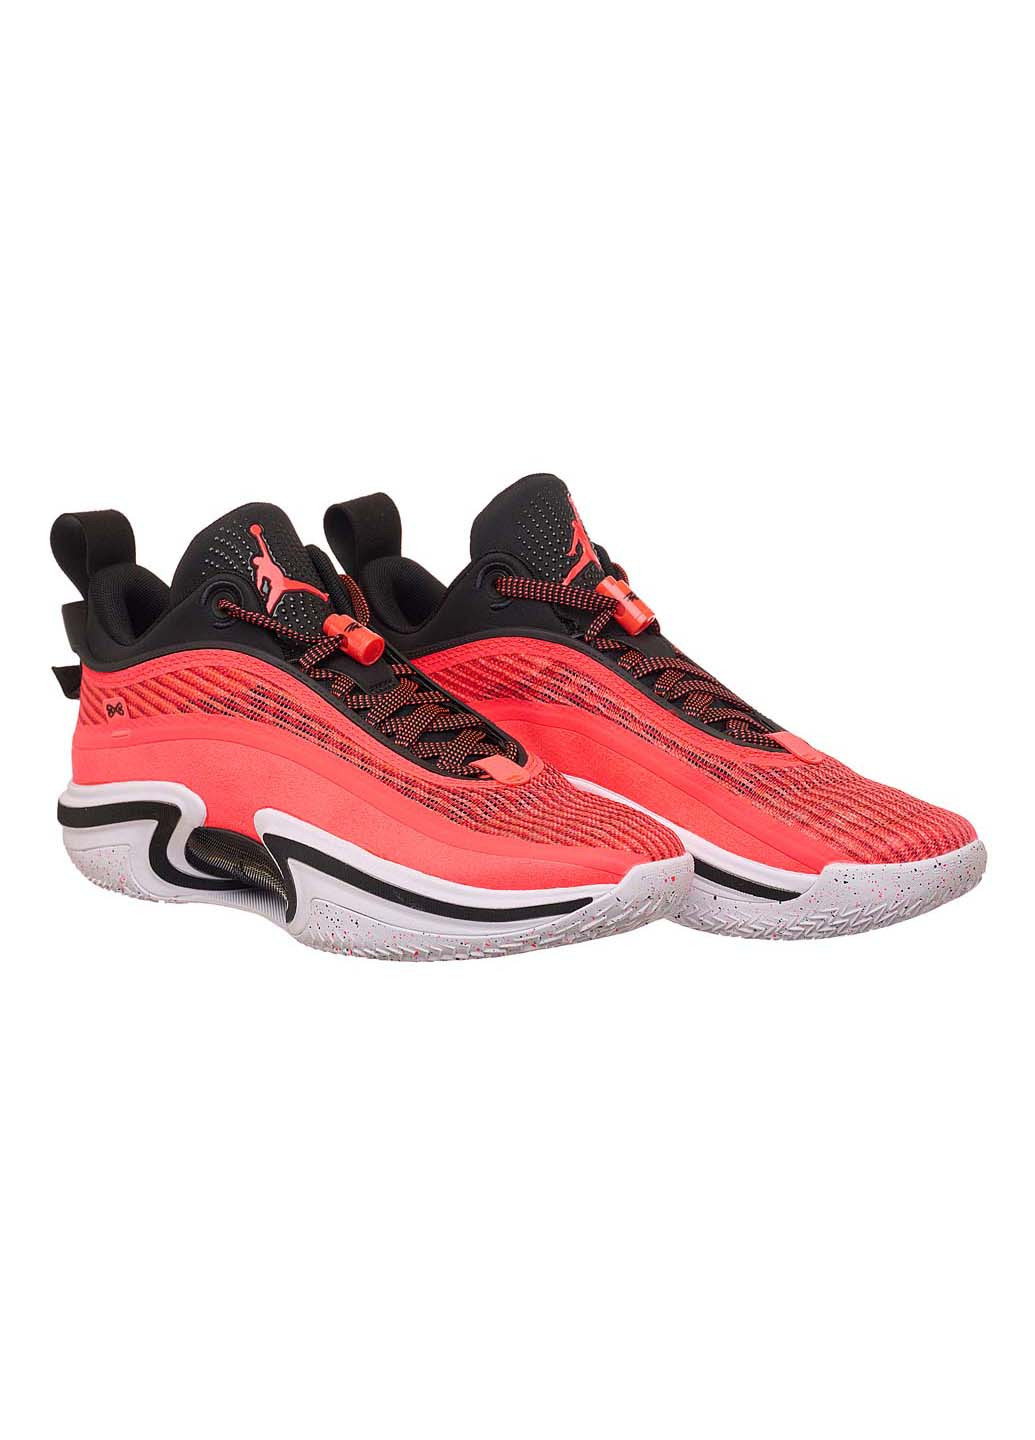 Красные демисезонные кроссовки Nike